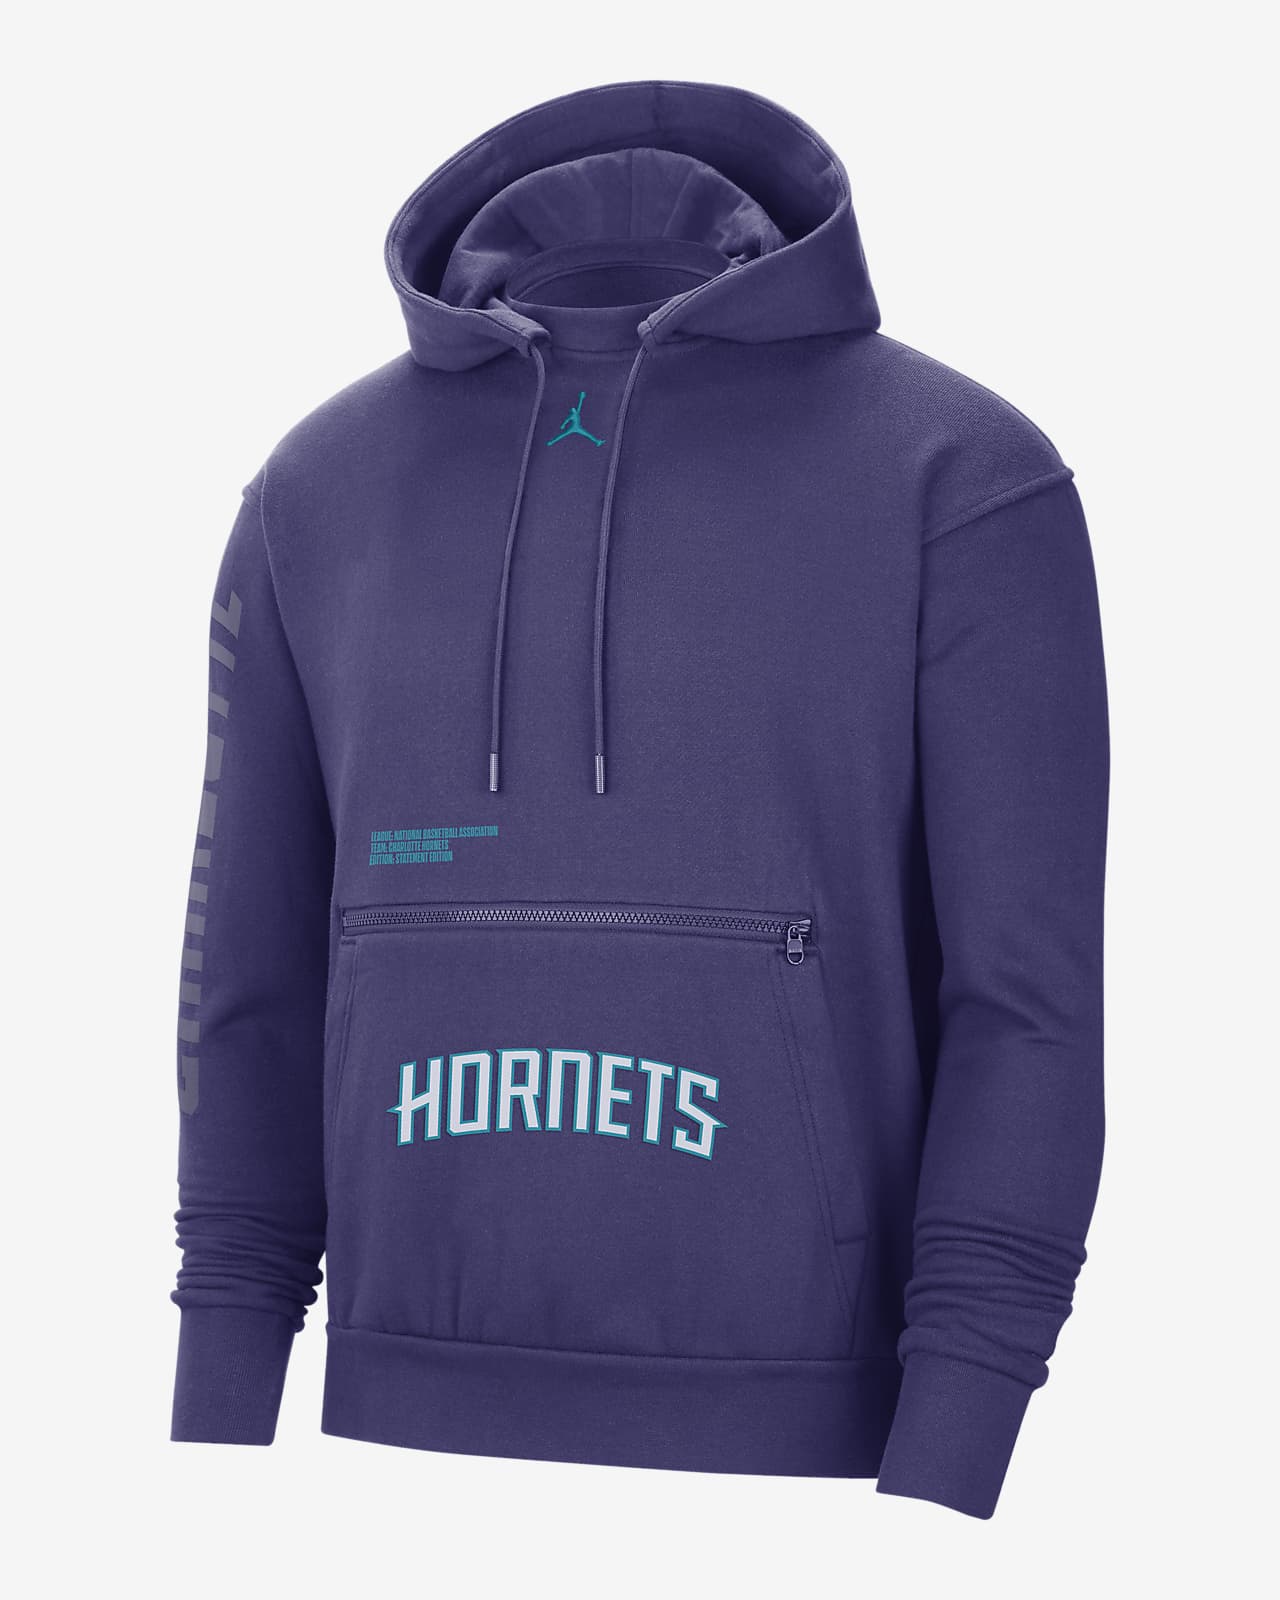 charlotte hornets jordan hoodie